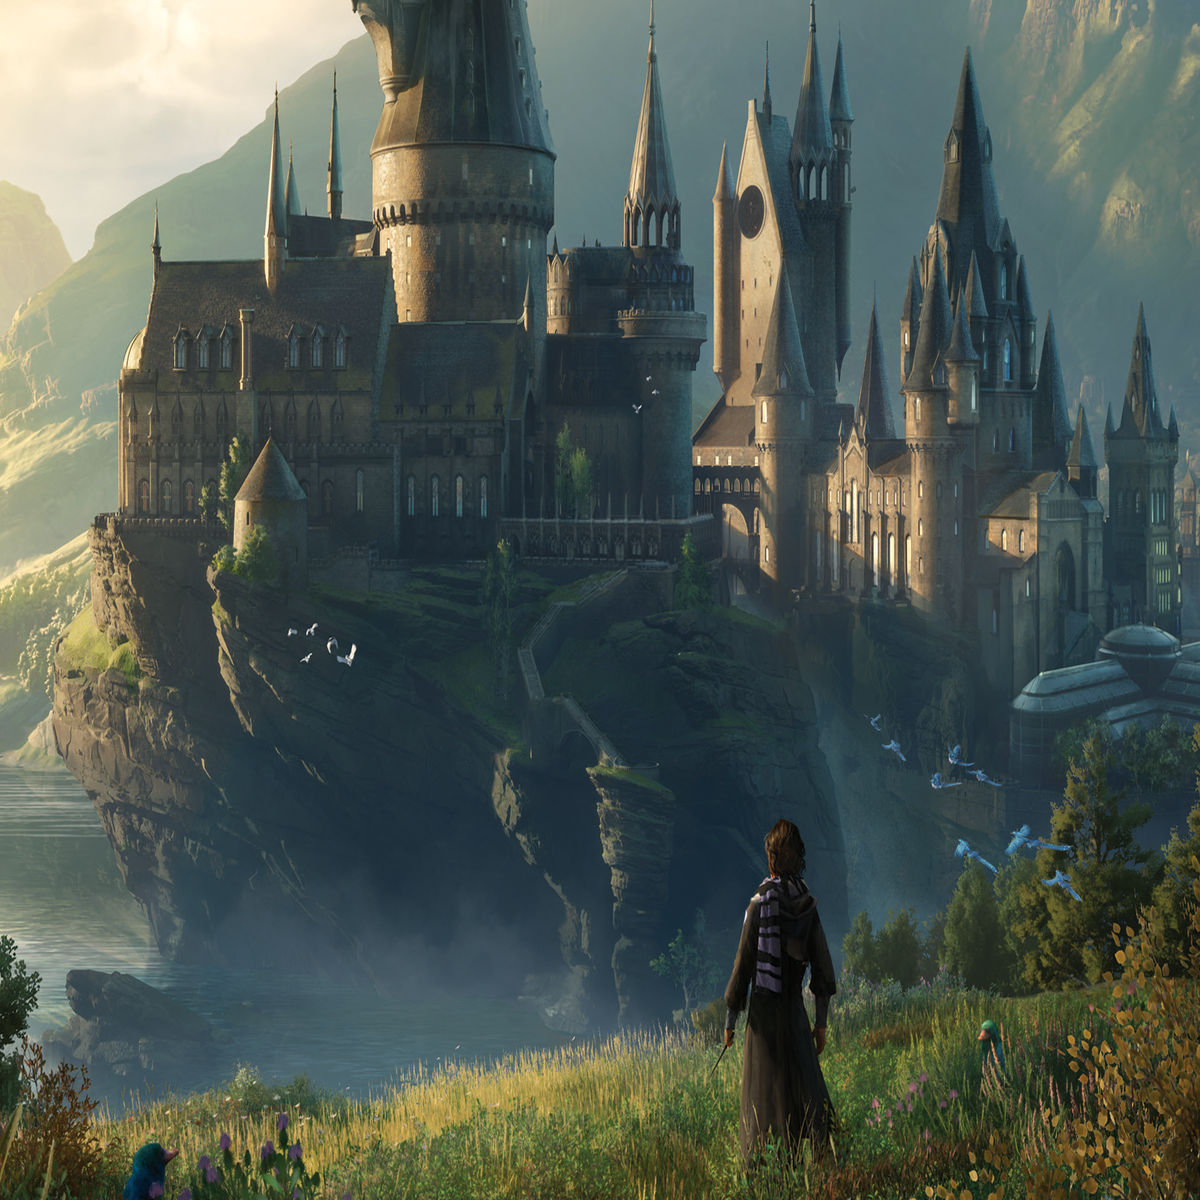 Hogwarts Legacy de Switch terá atualização de 8GB no lançamento